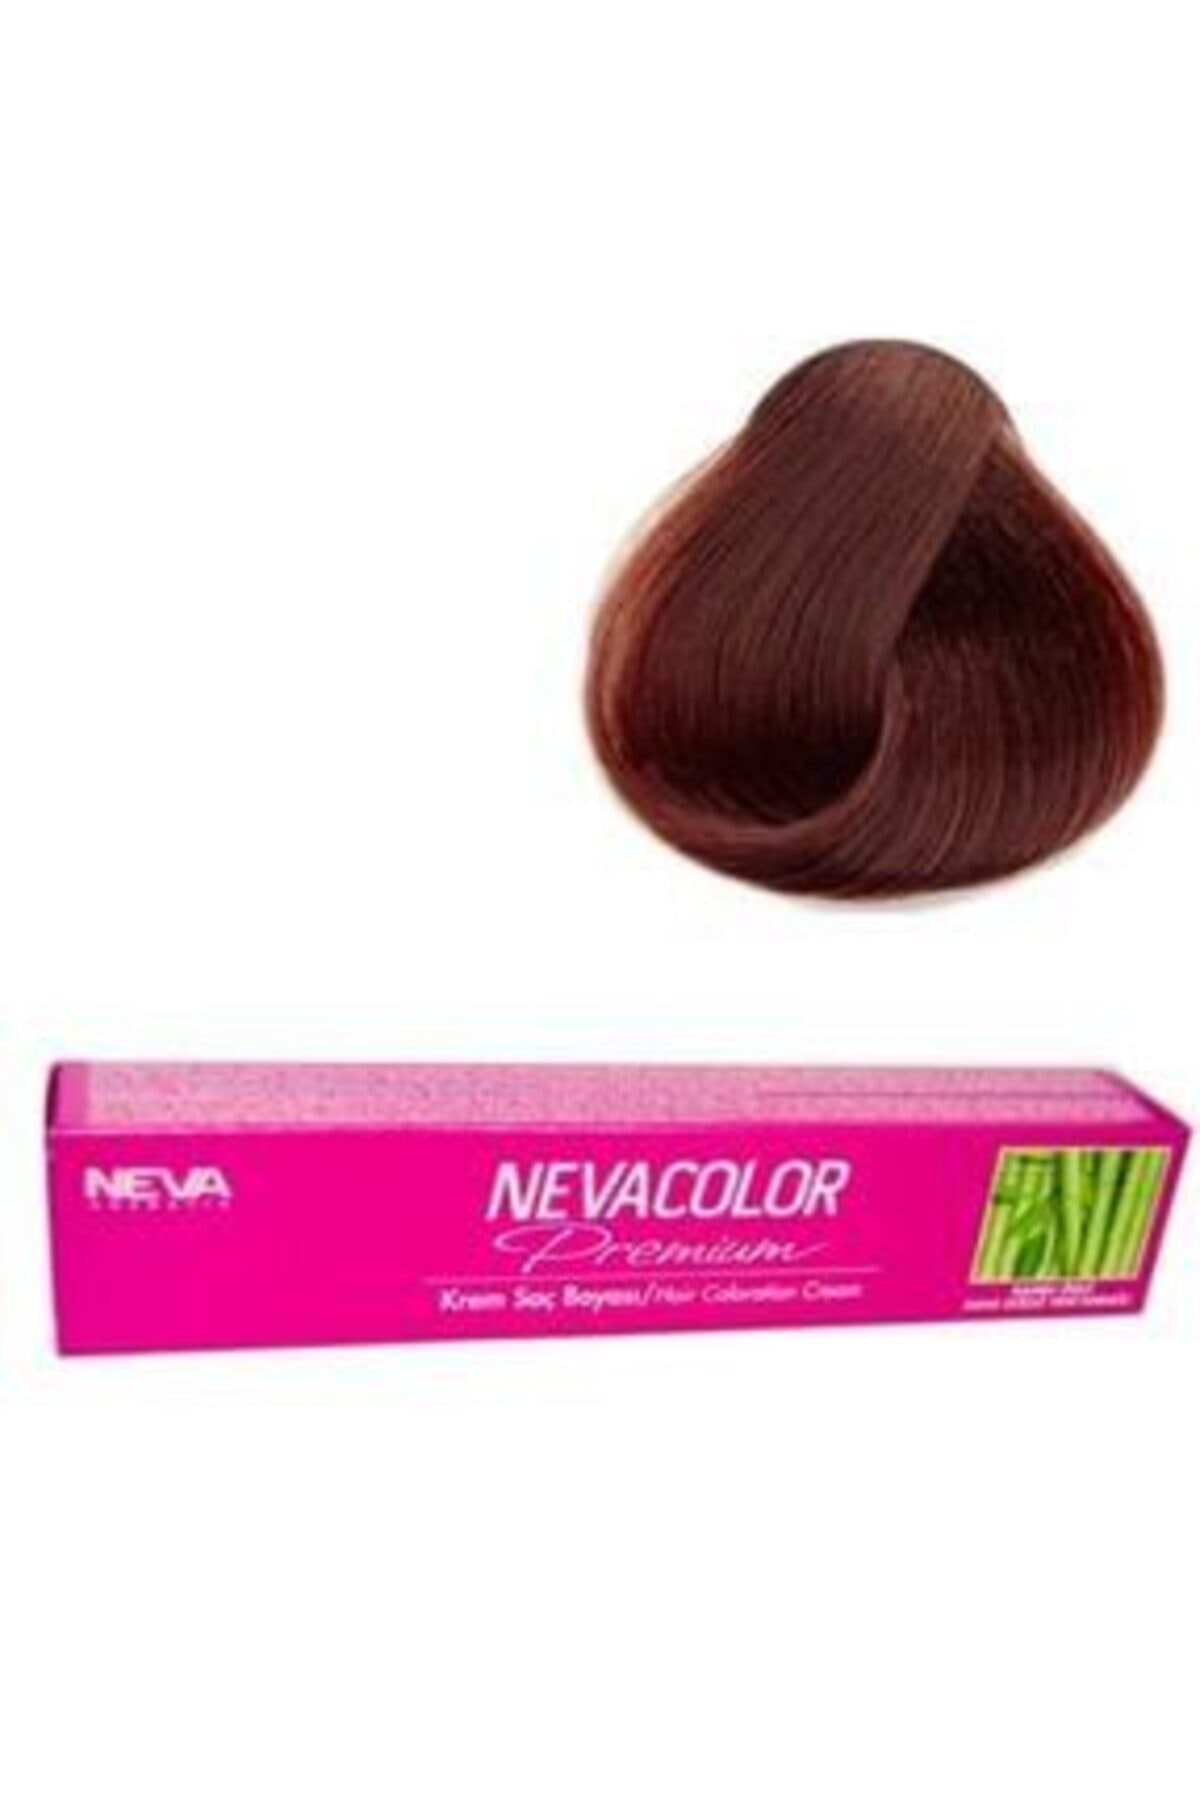 Neva Color Premium Tüp Saç Boyası 4.07 Türk Kahvesi 50 Ml 8690057005732